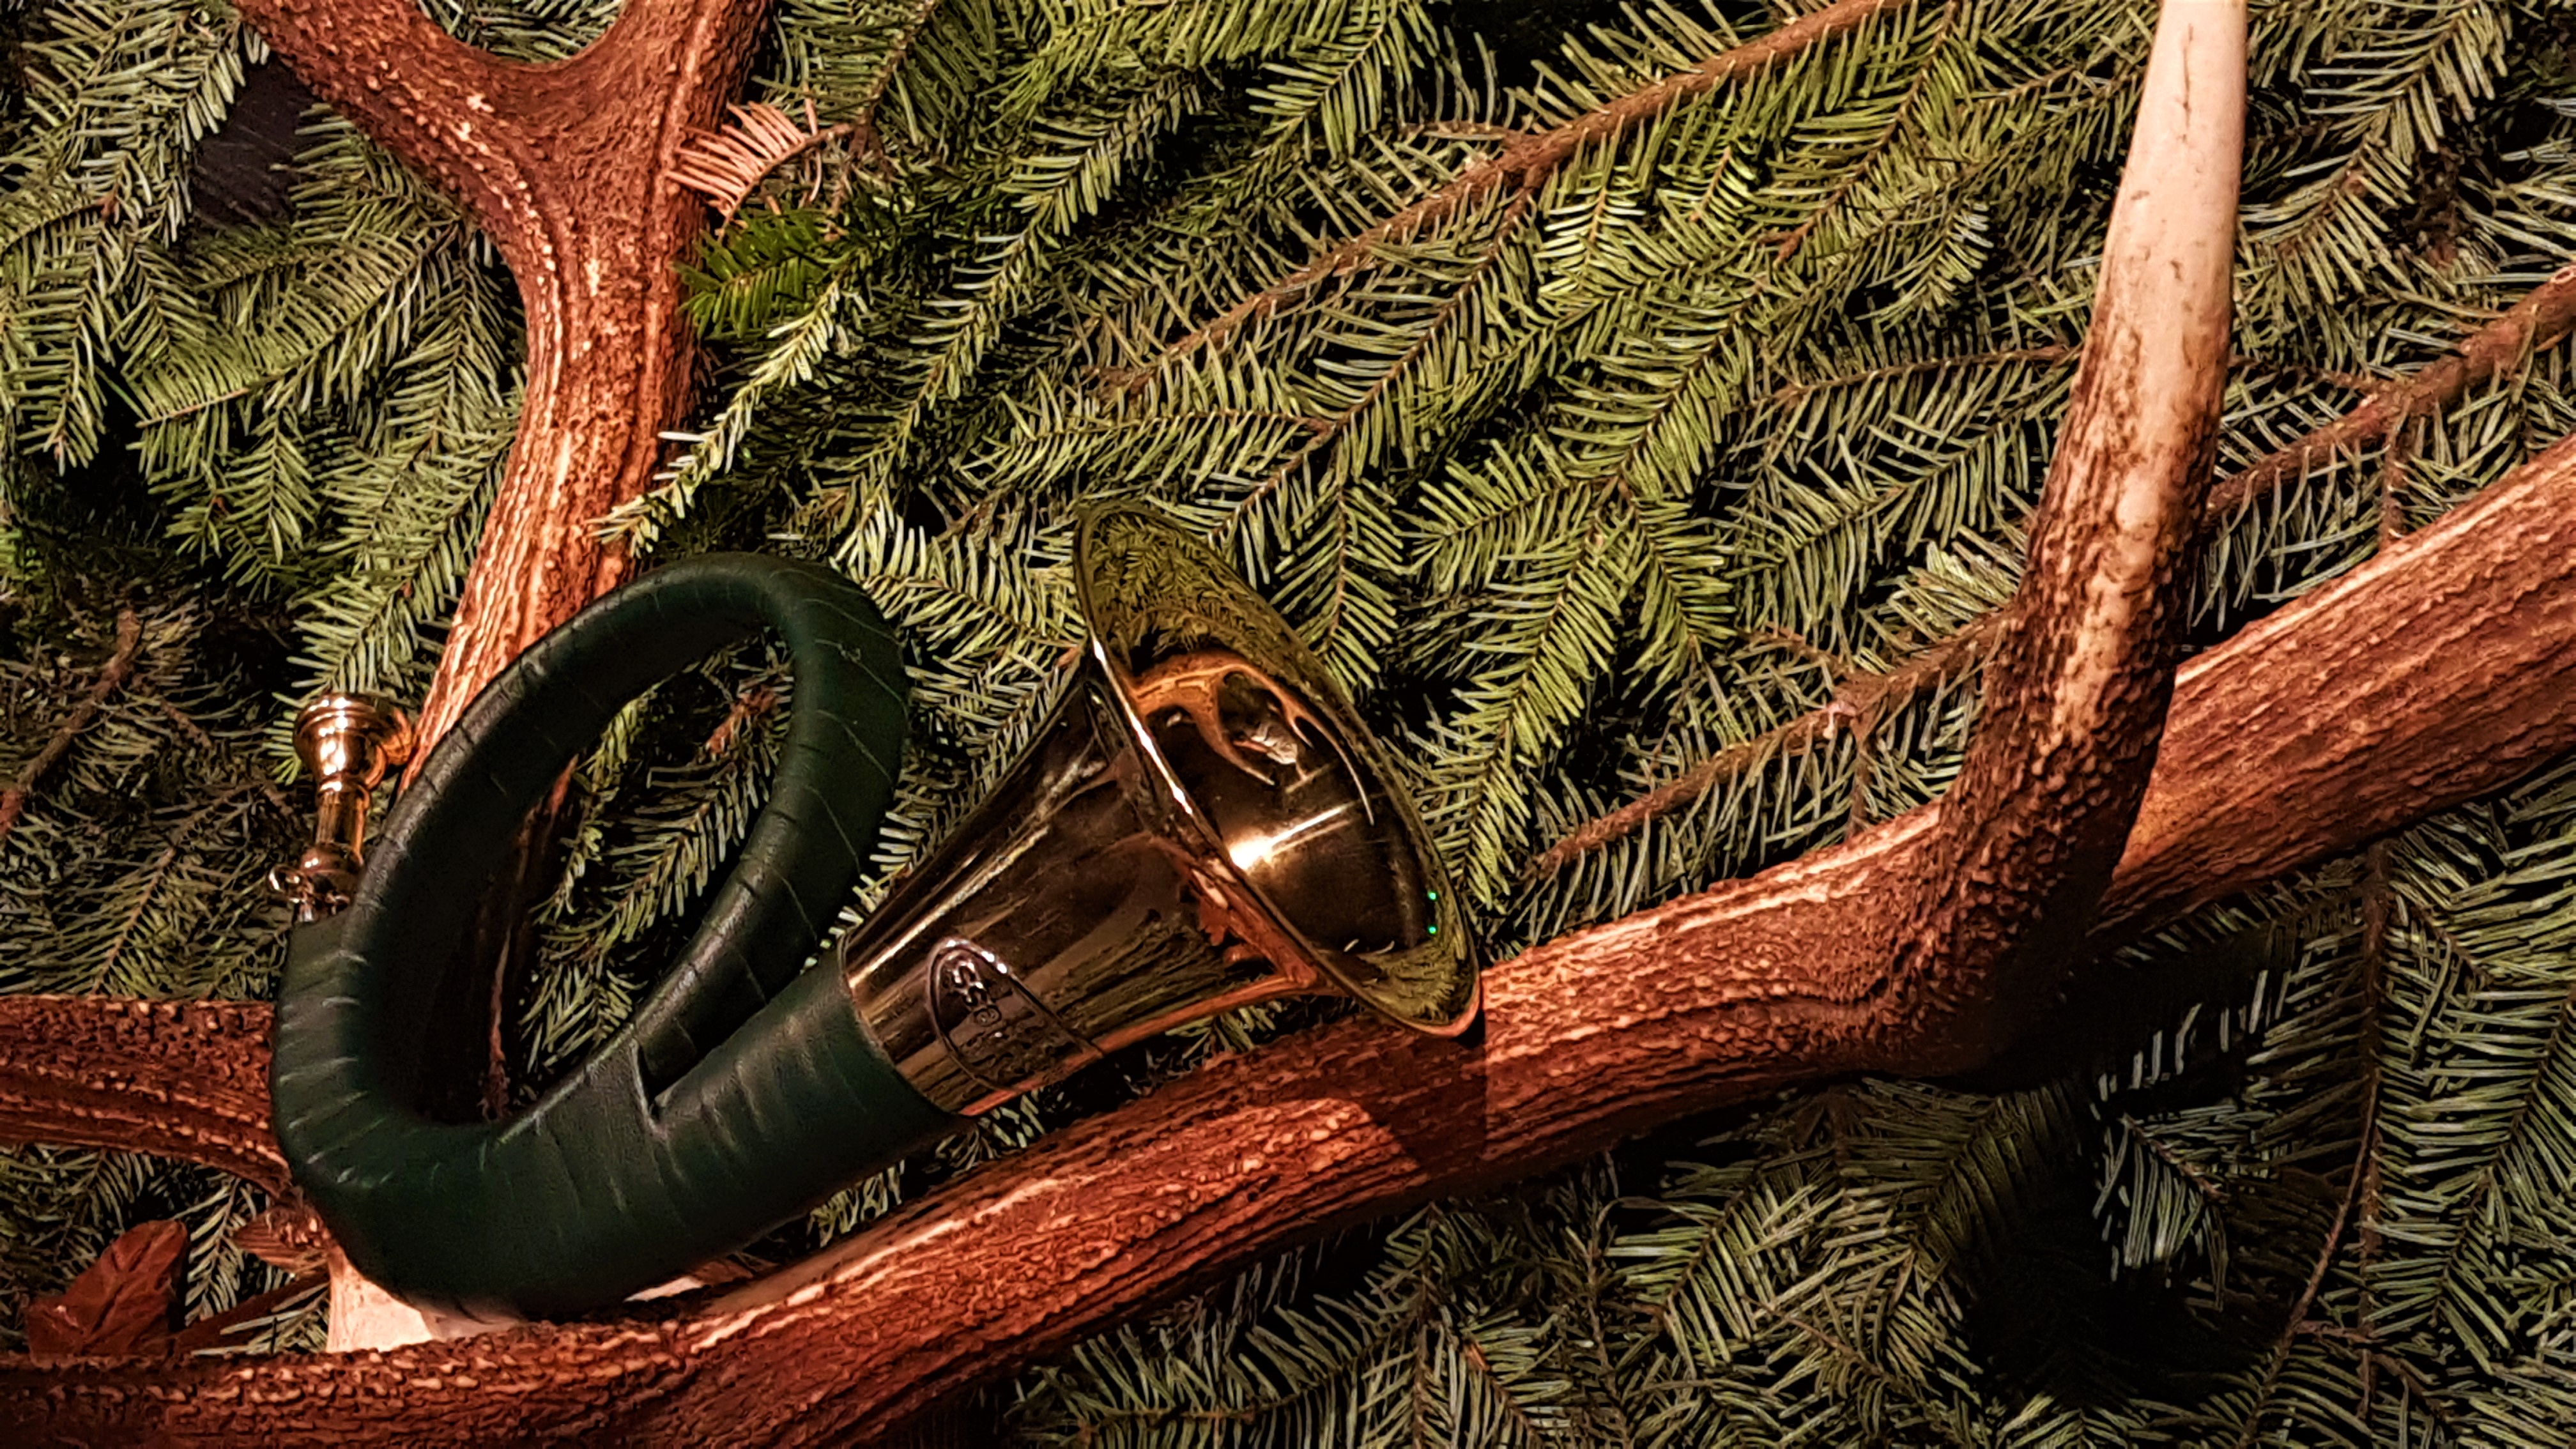 Slika, ki vsebuje besede drevo, božična jelka, rastlina, veja

Opis je samodejno ustvarjen